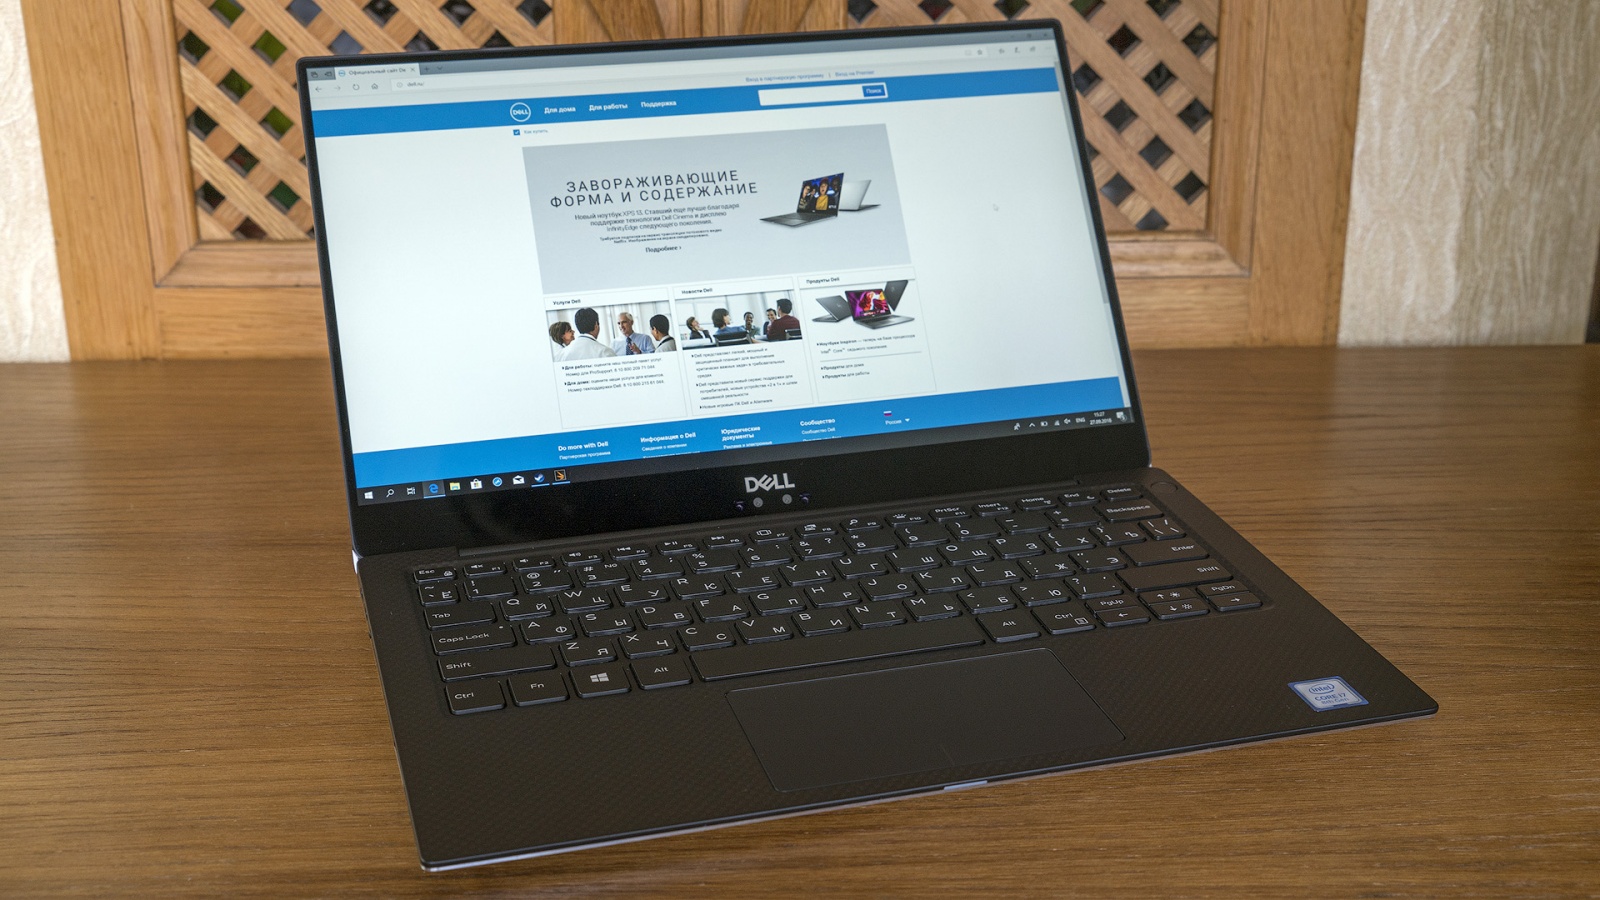 Обзор ноутбука Dell XPS 13 9370: лёгкий, красивый, быстрый - 14